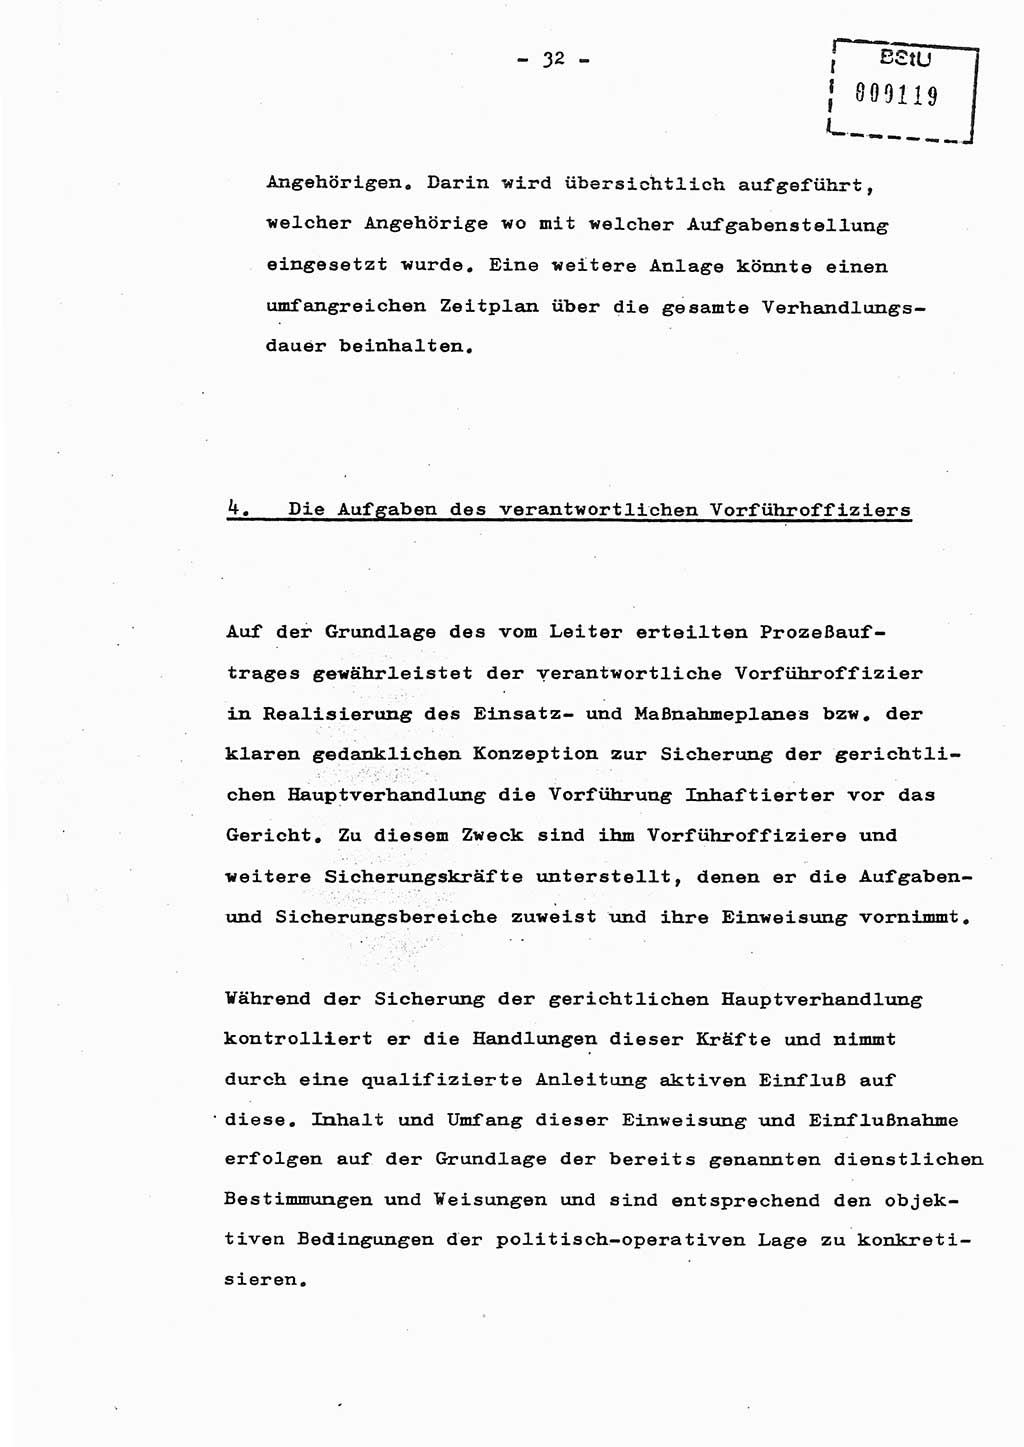 Schulungsmaterial Exemplar-Nr.: 8, Ministerium für Staatssicherheit [Deutsche Demokratische Republik (DDR)], Abteilung (Abt.) ⅩⅣ, Berlin 1987, Seite 32 (Sch.-Mat. Expl. 8 MfS DDR Abt. ⅩⅣ /87 1987, S. 32)